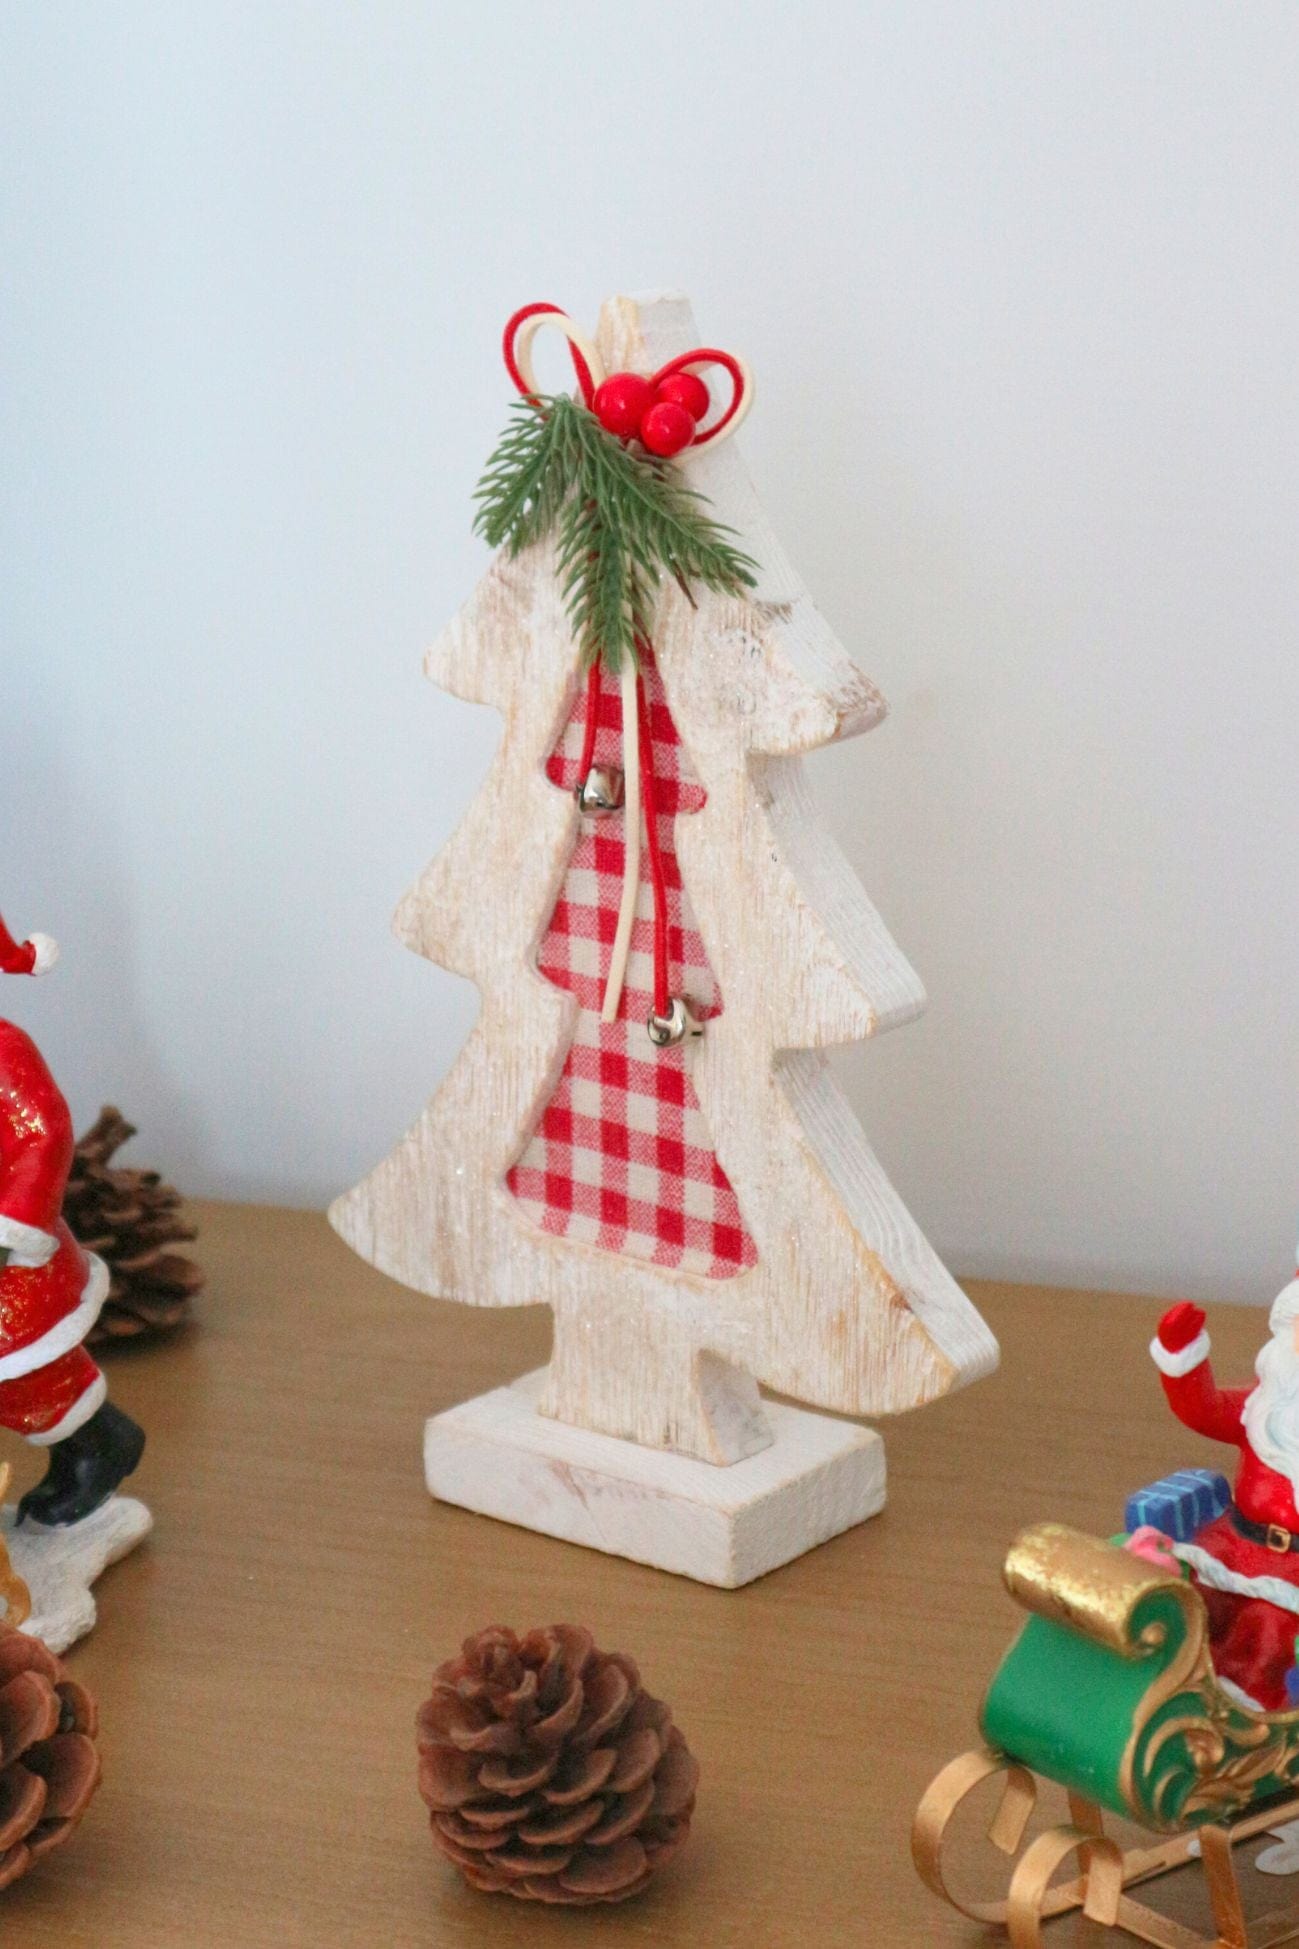 Item International Numen Numen - Albero natalizio in legno rustico bianco | Item International